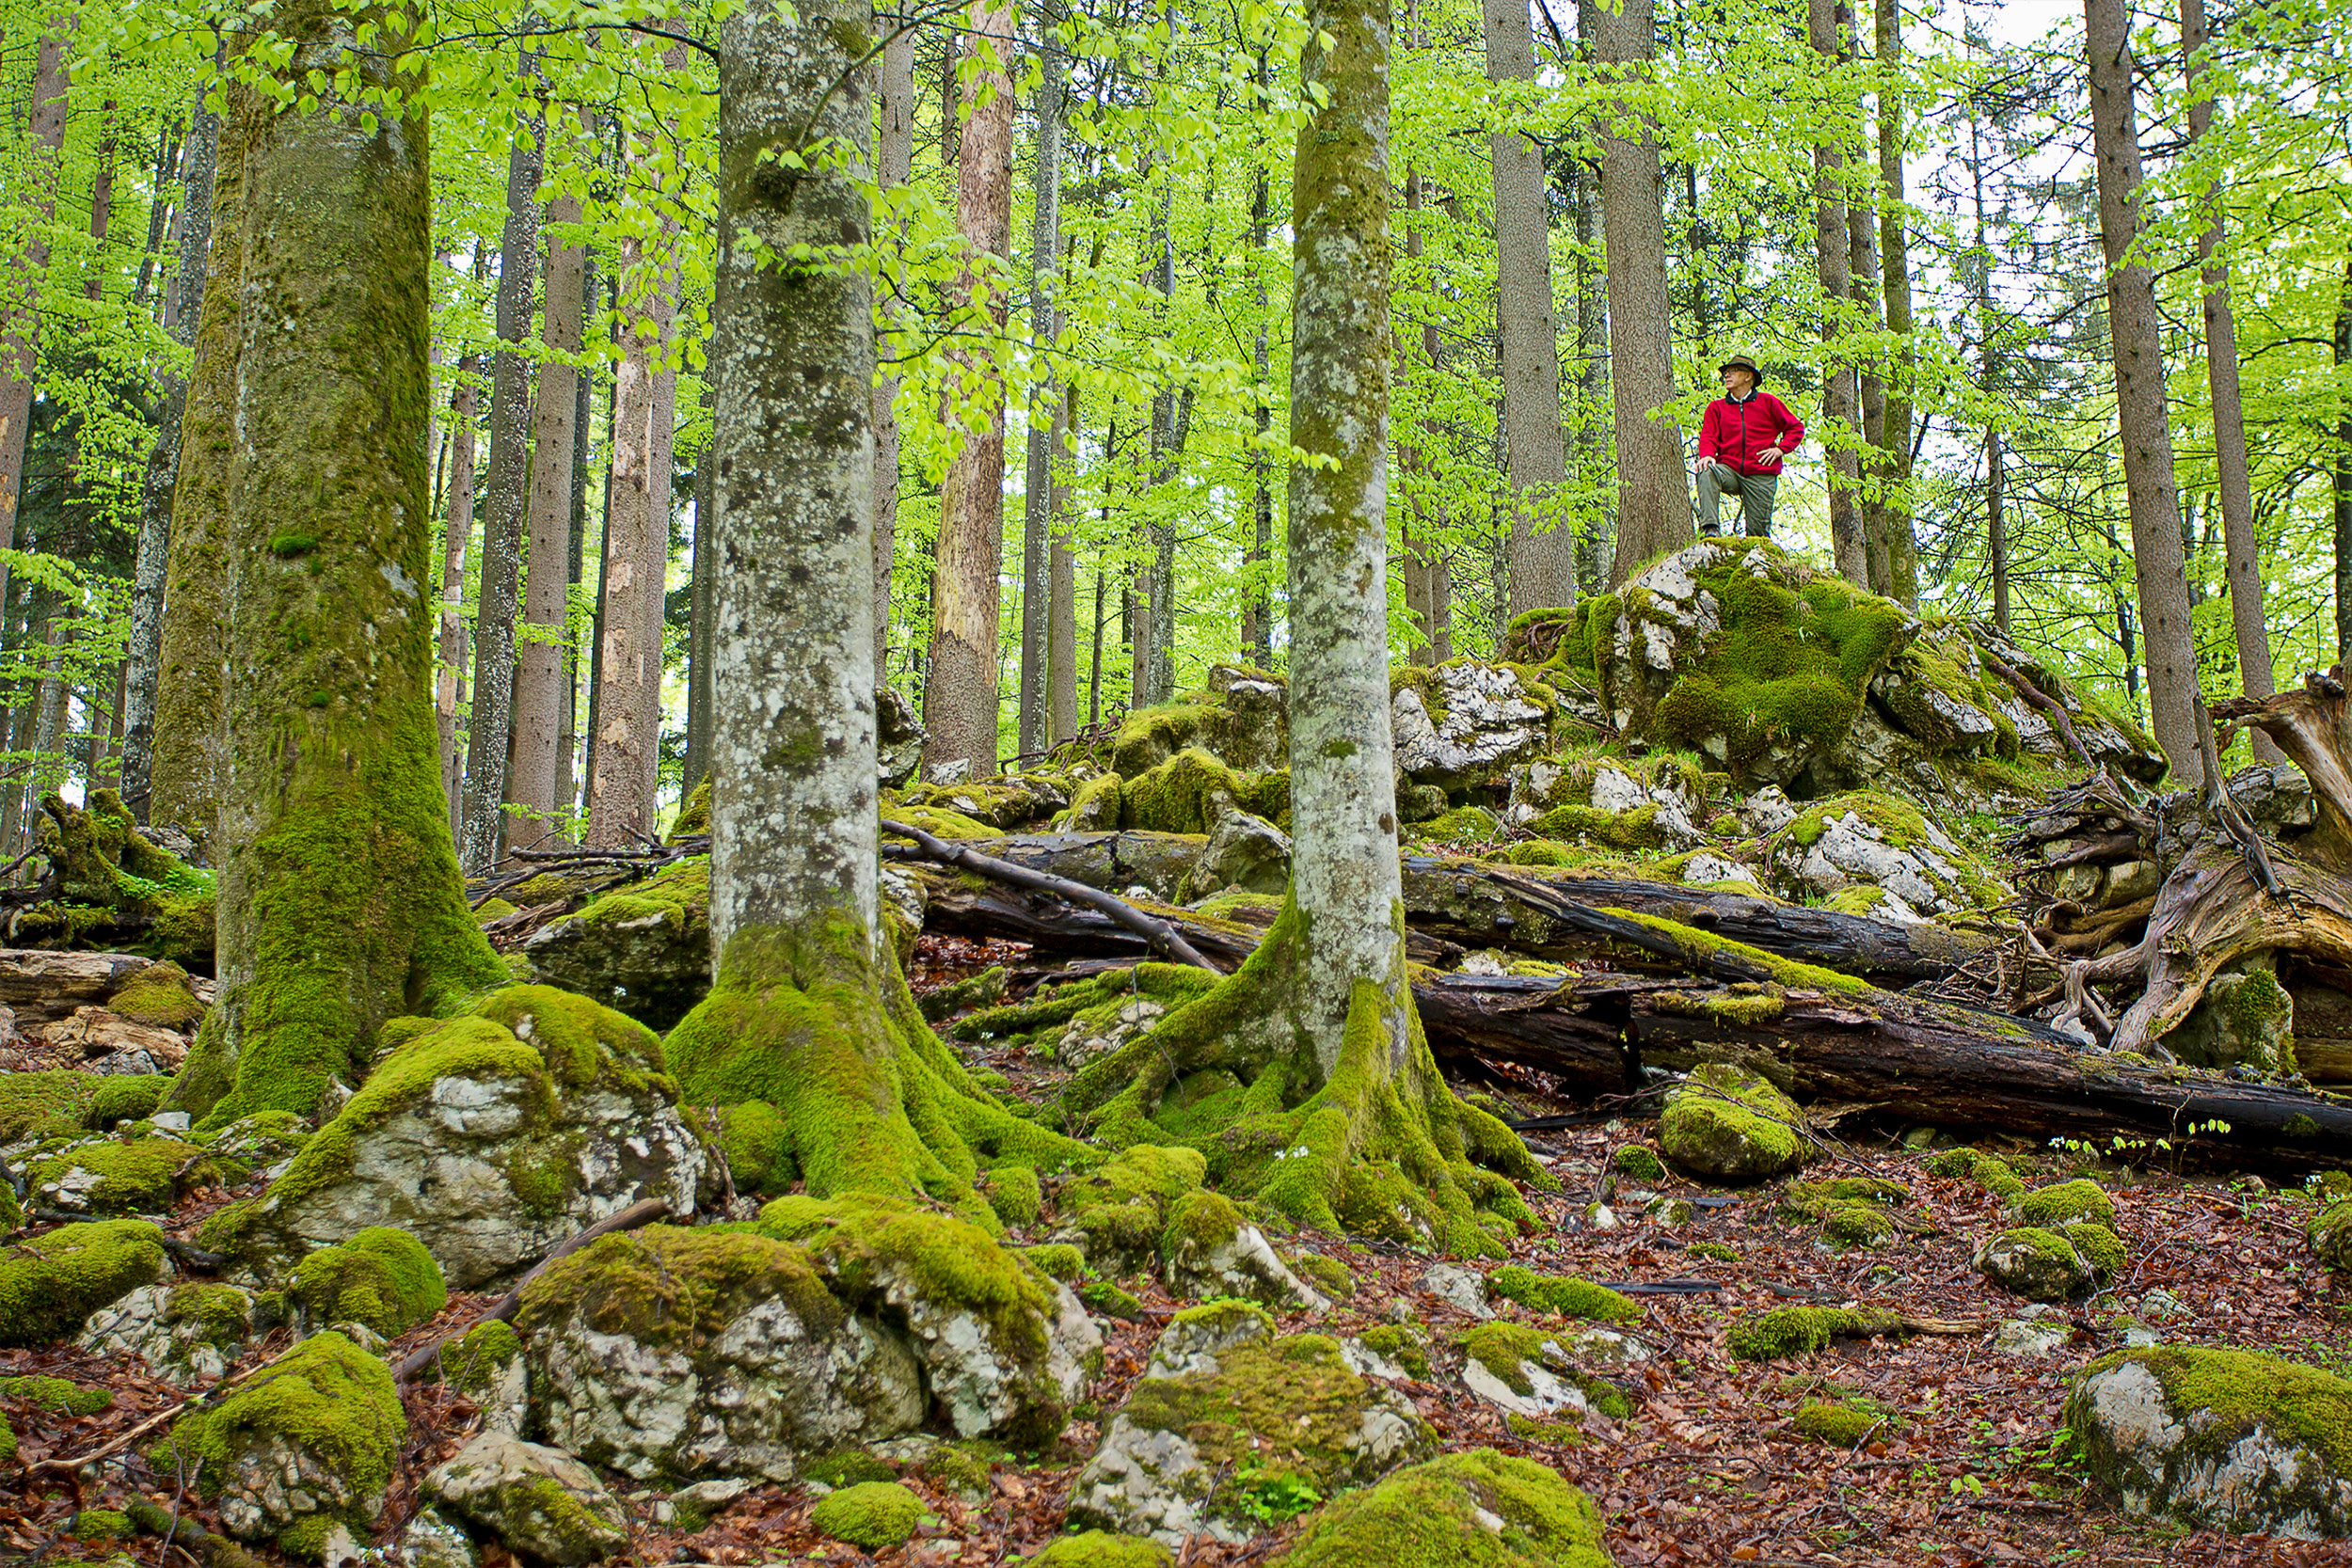 Auf einem Felsen im Buchenwald steht ein Wanderer und betrachtet das frische Buchenlaub